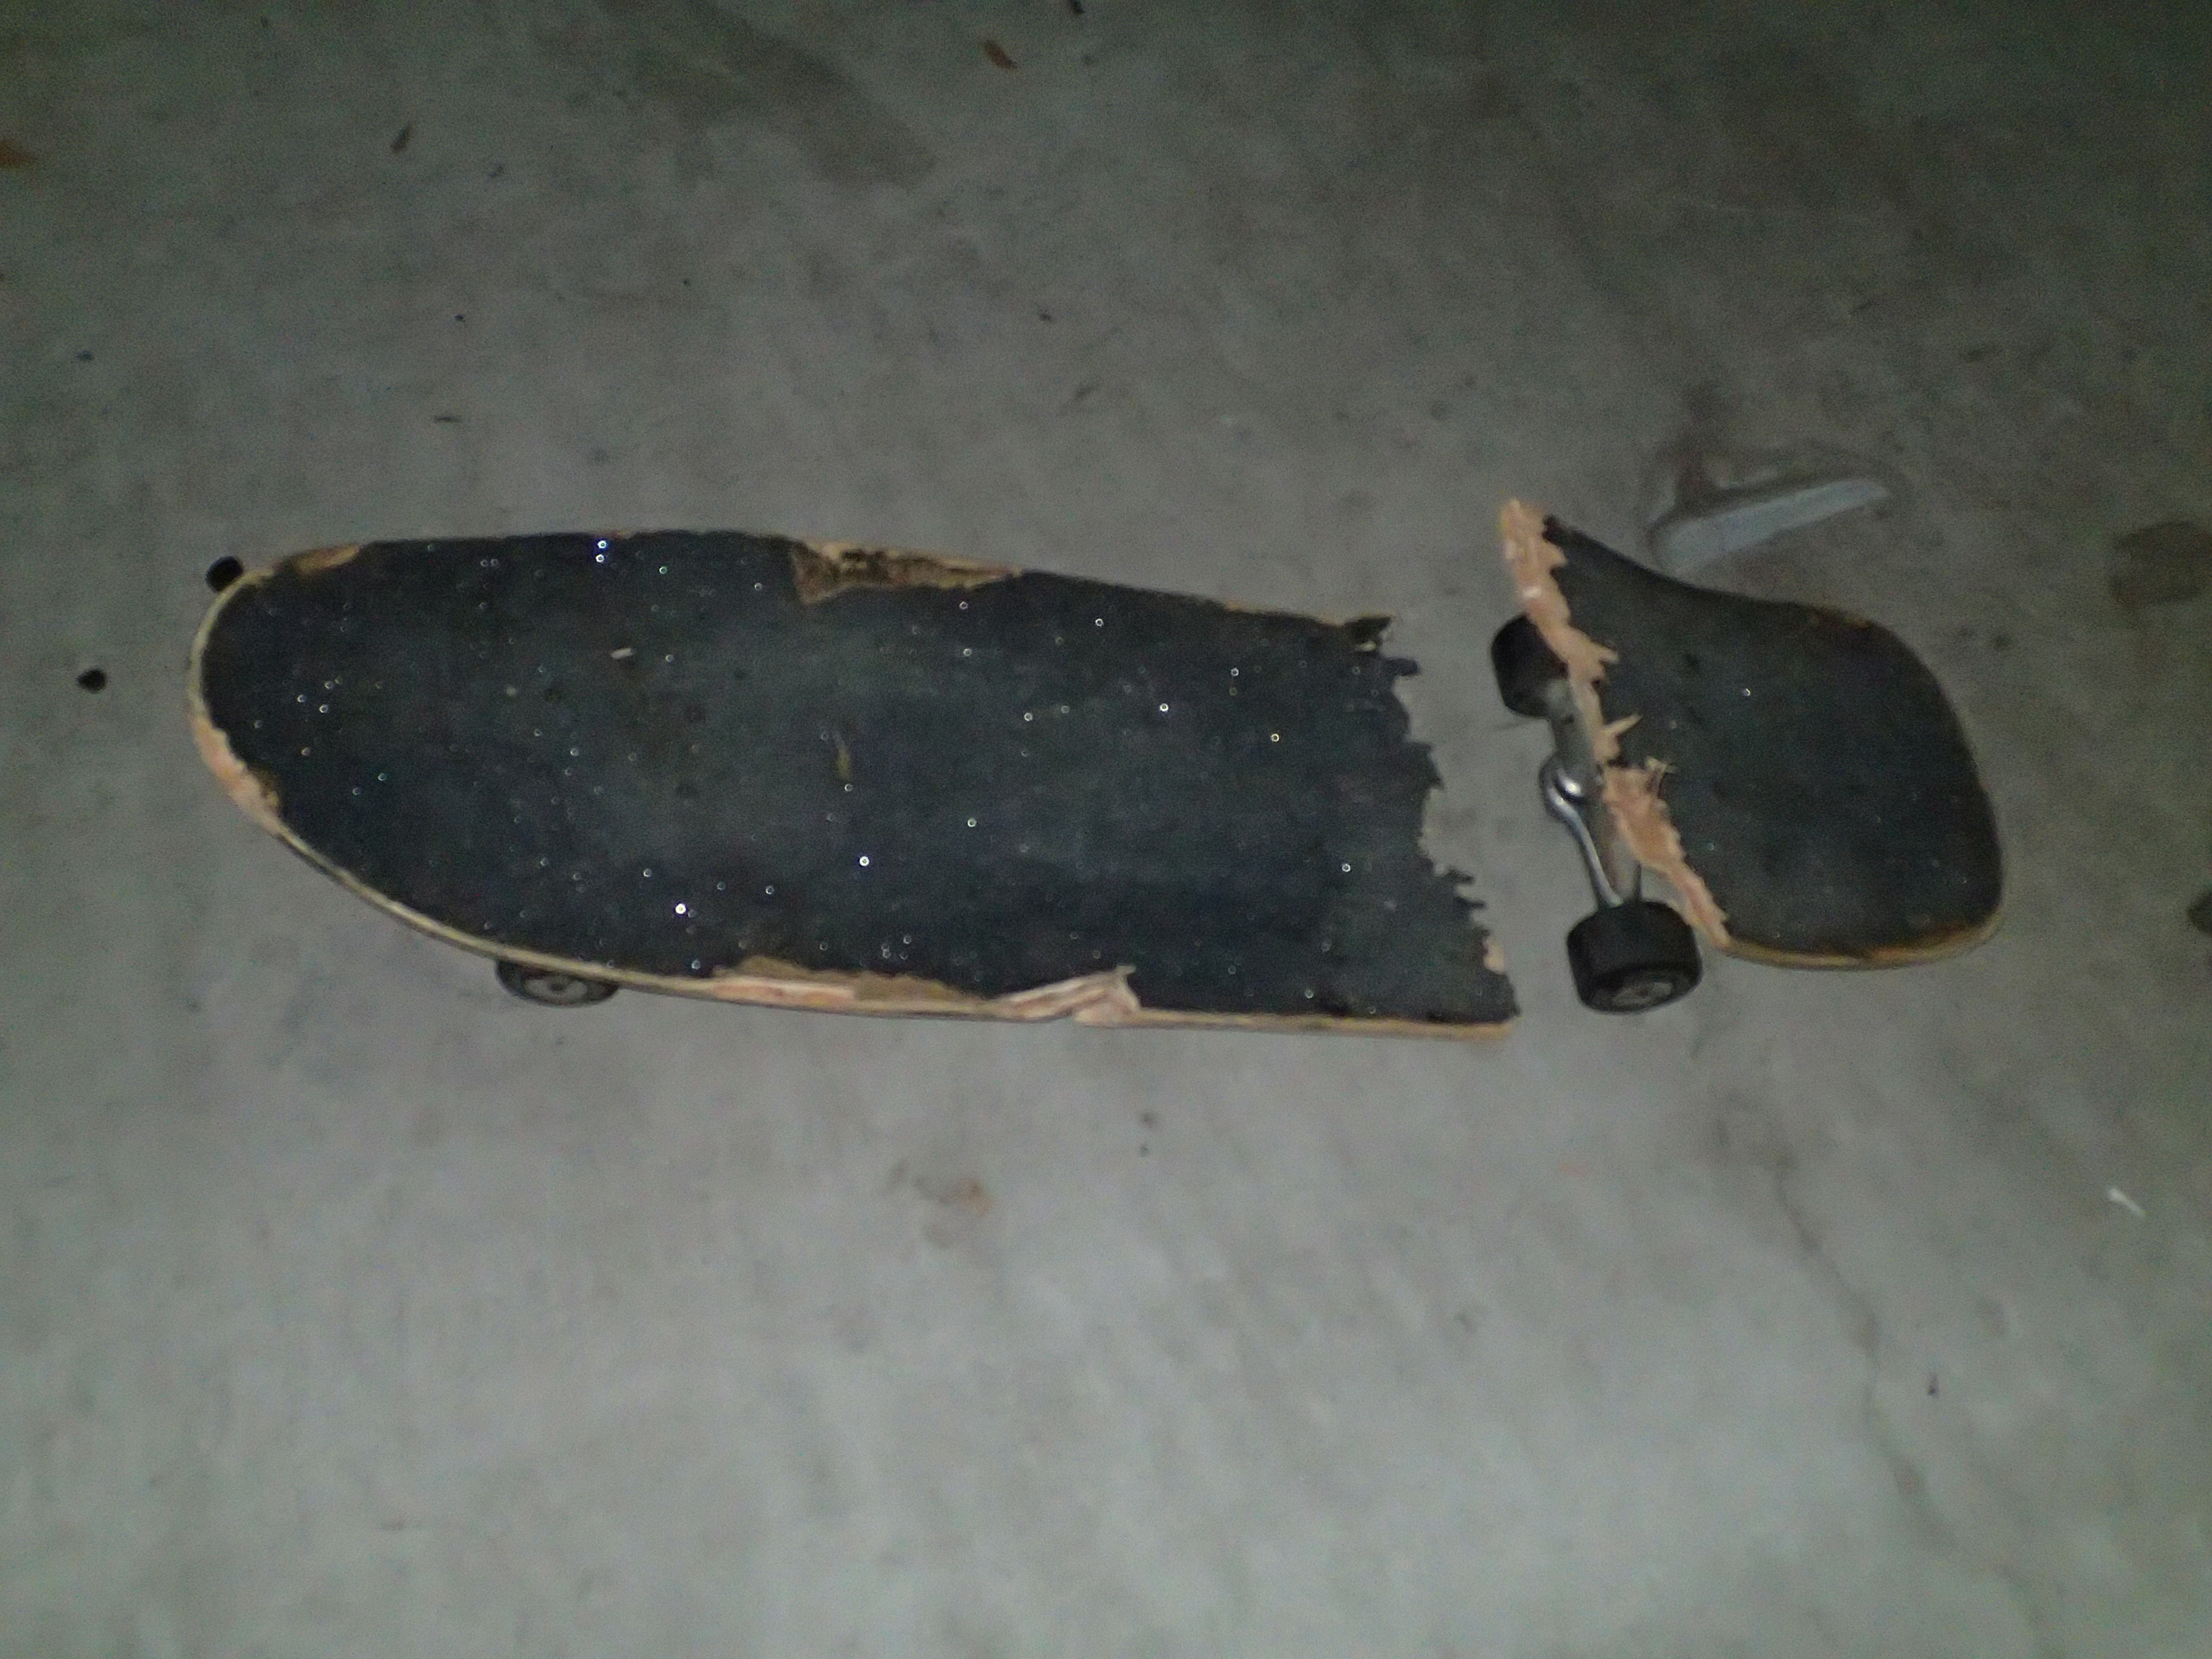 My Skateboard